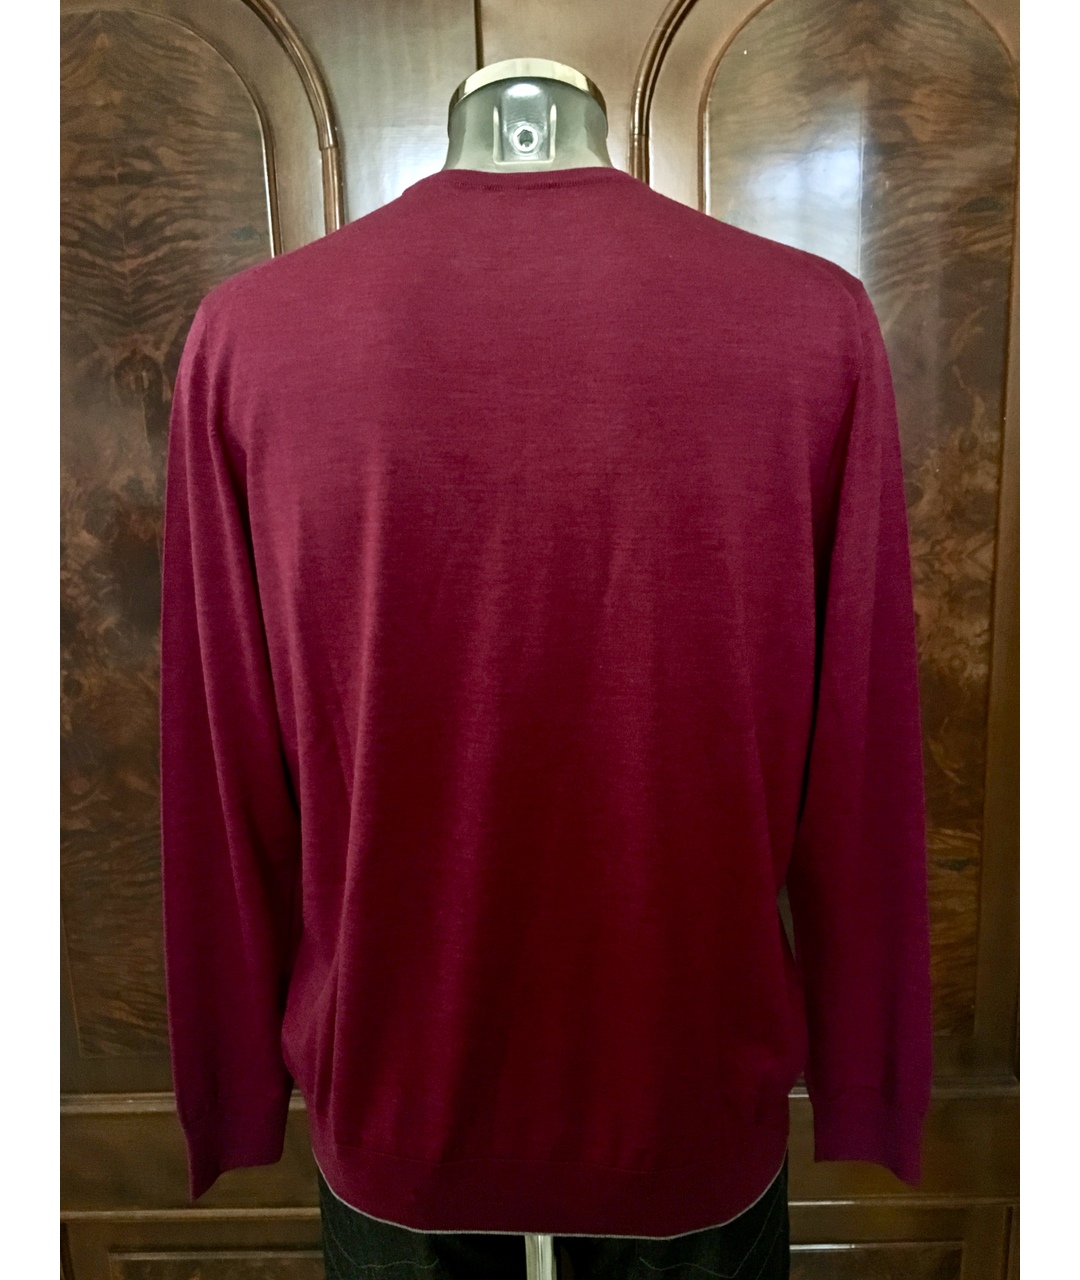 BILANCIONI Бордовый шерстяной джемпер / свитер, фото 2